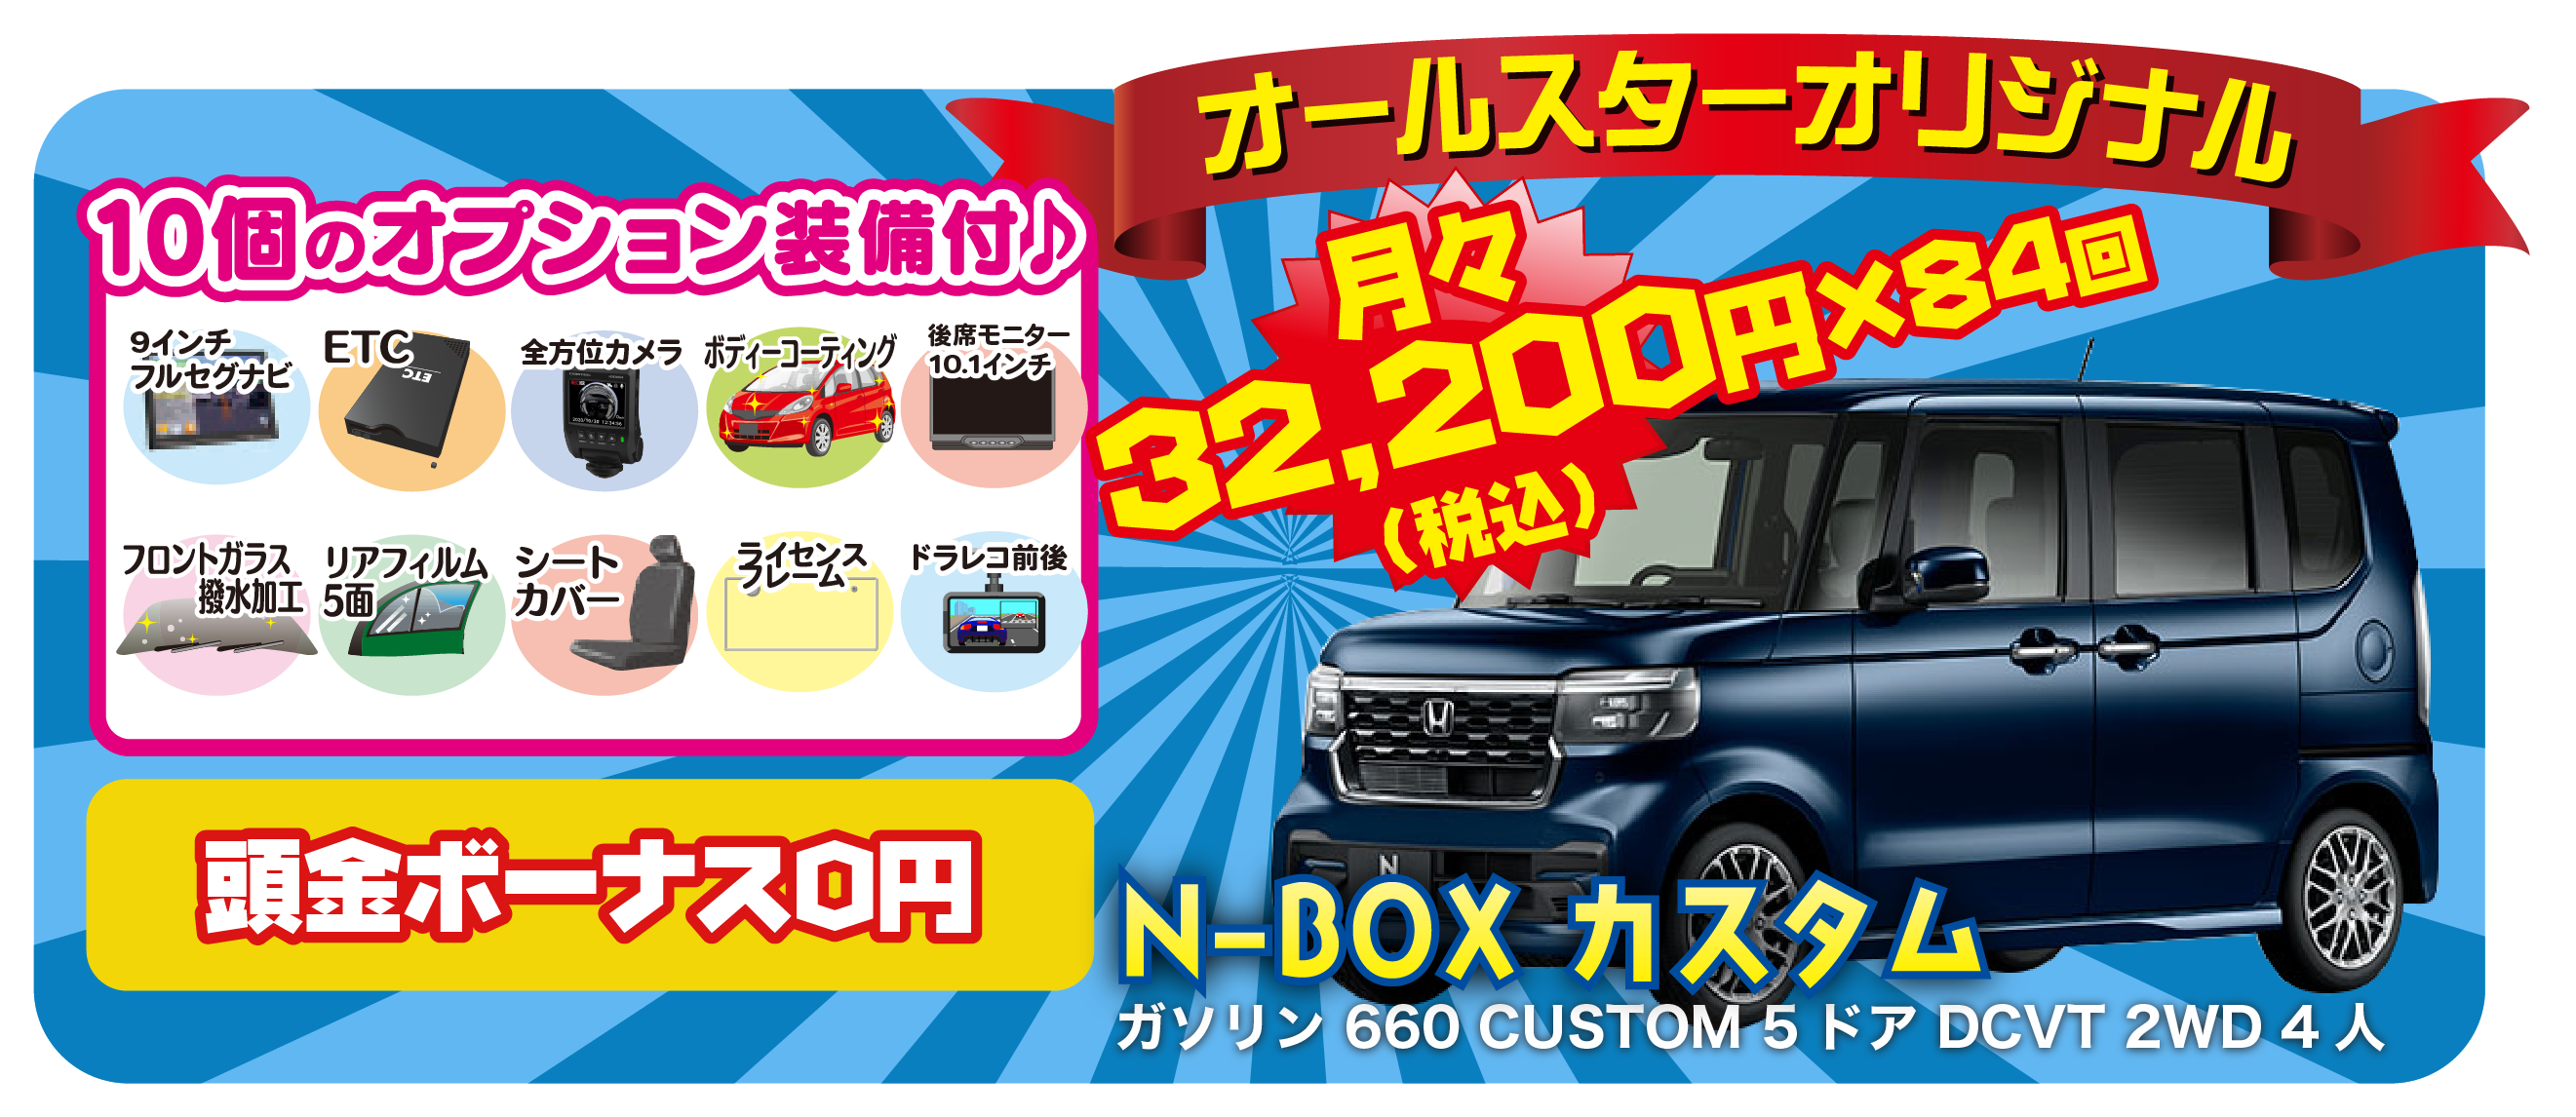 n-box